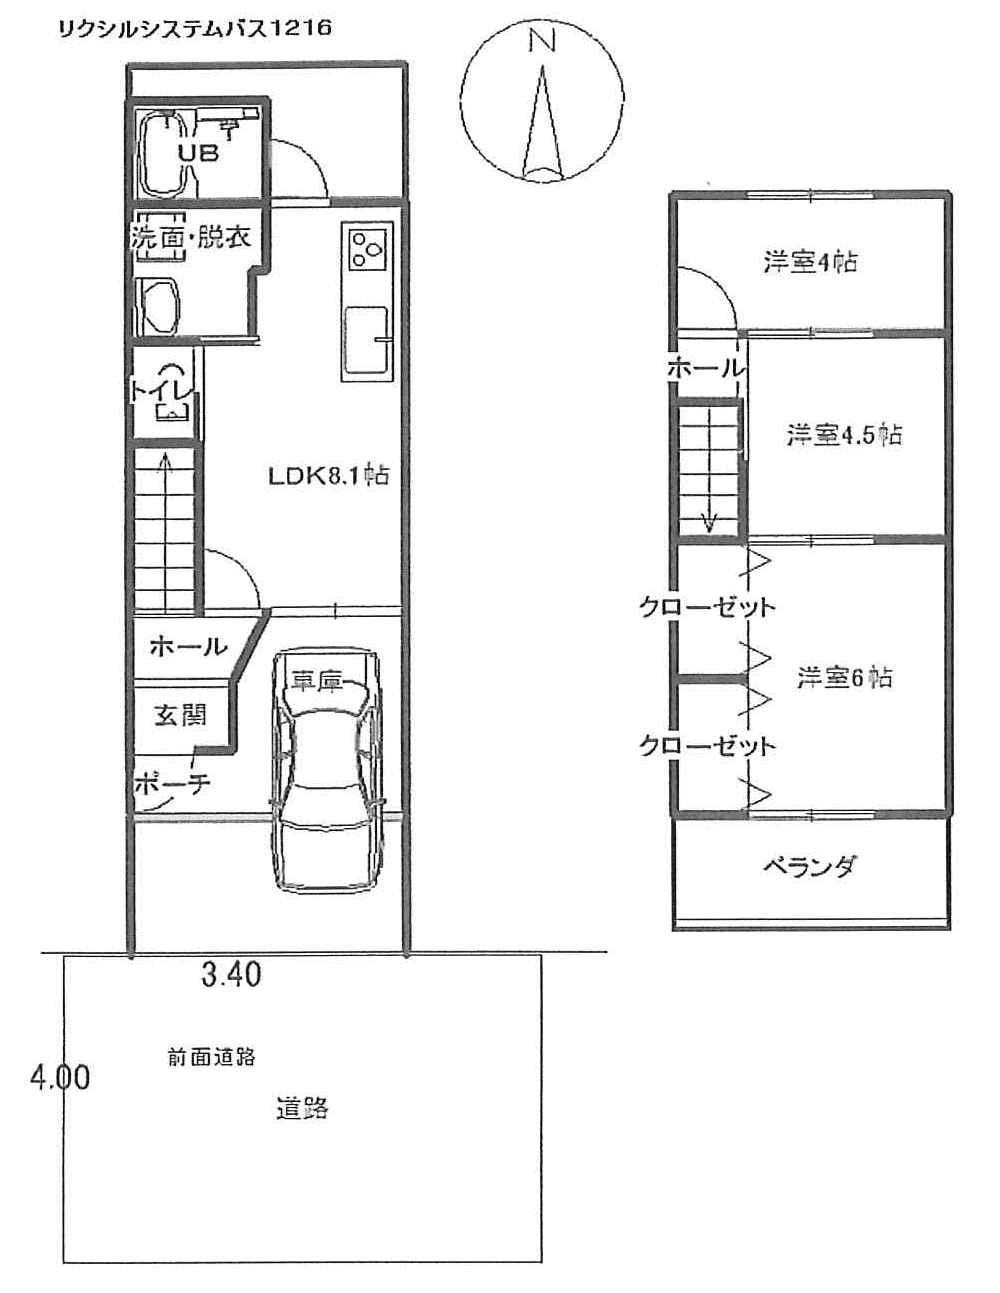 Floor plan. 8.5 million yen, 3LDK, Land area 45.49 sq m , Building area 43.43 sq m